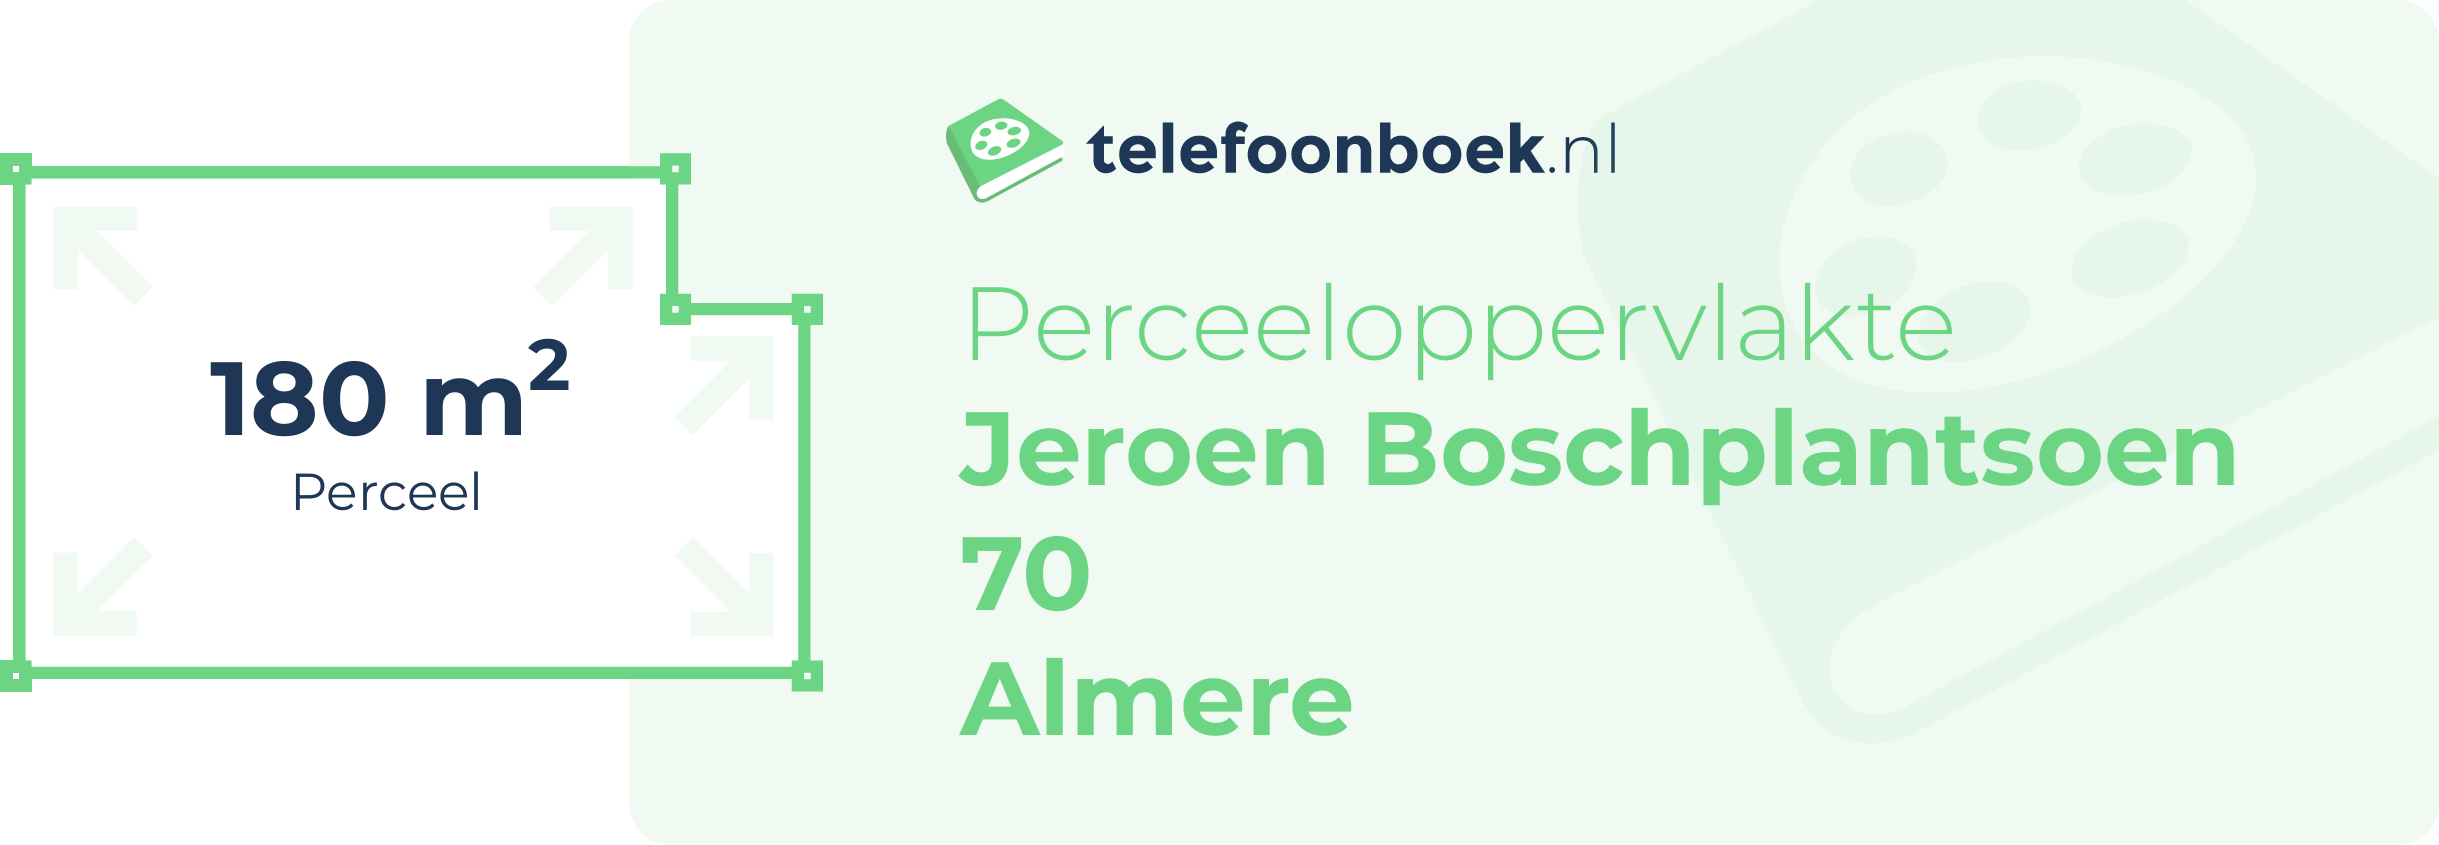 Perceeloppervlakte Jeroen Boschplantsoen 70 Almere